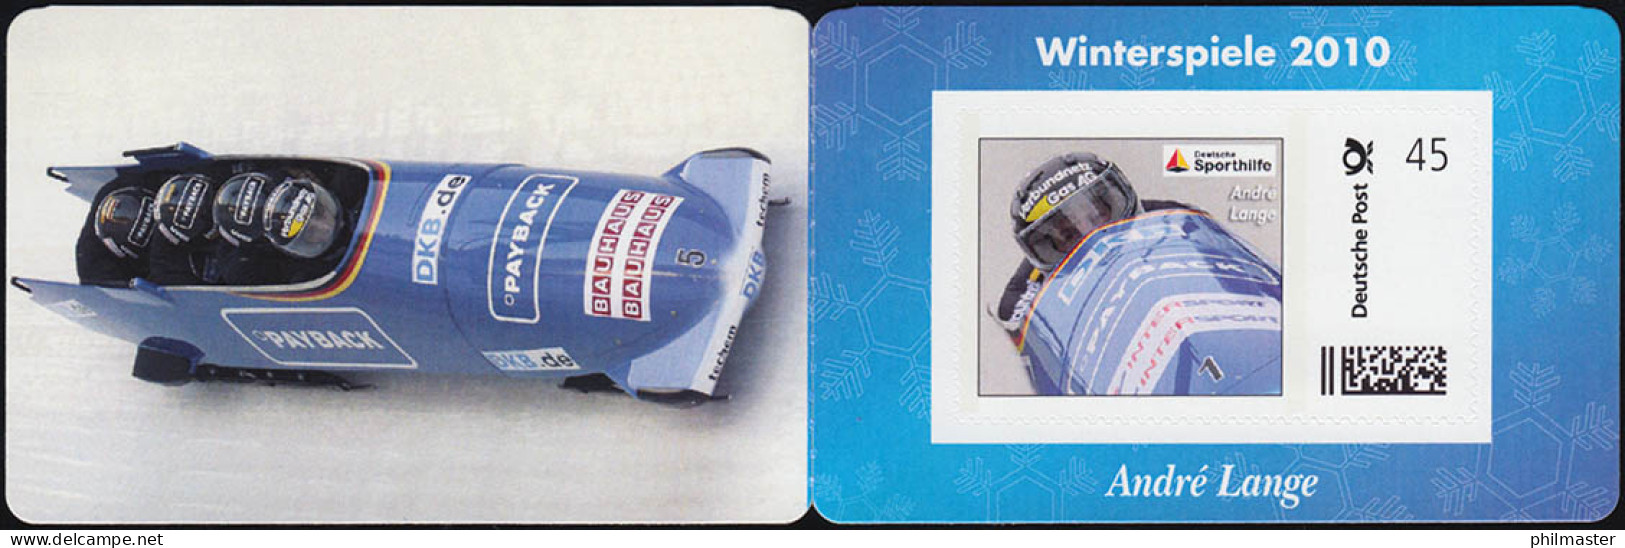 Sporthilfe: Winterspiele 2010 Portocard Bobsport Andre Lange,selbstklebend, ** - Winter (Other)